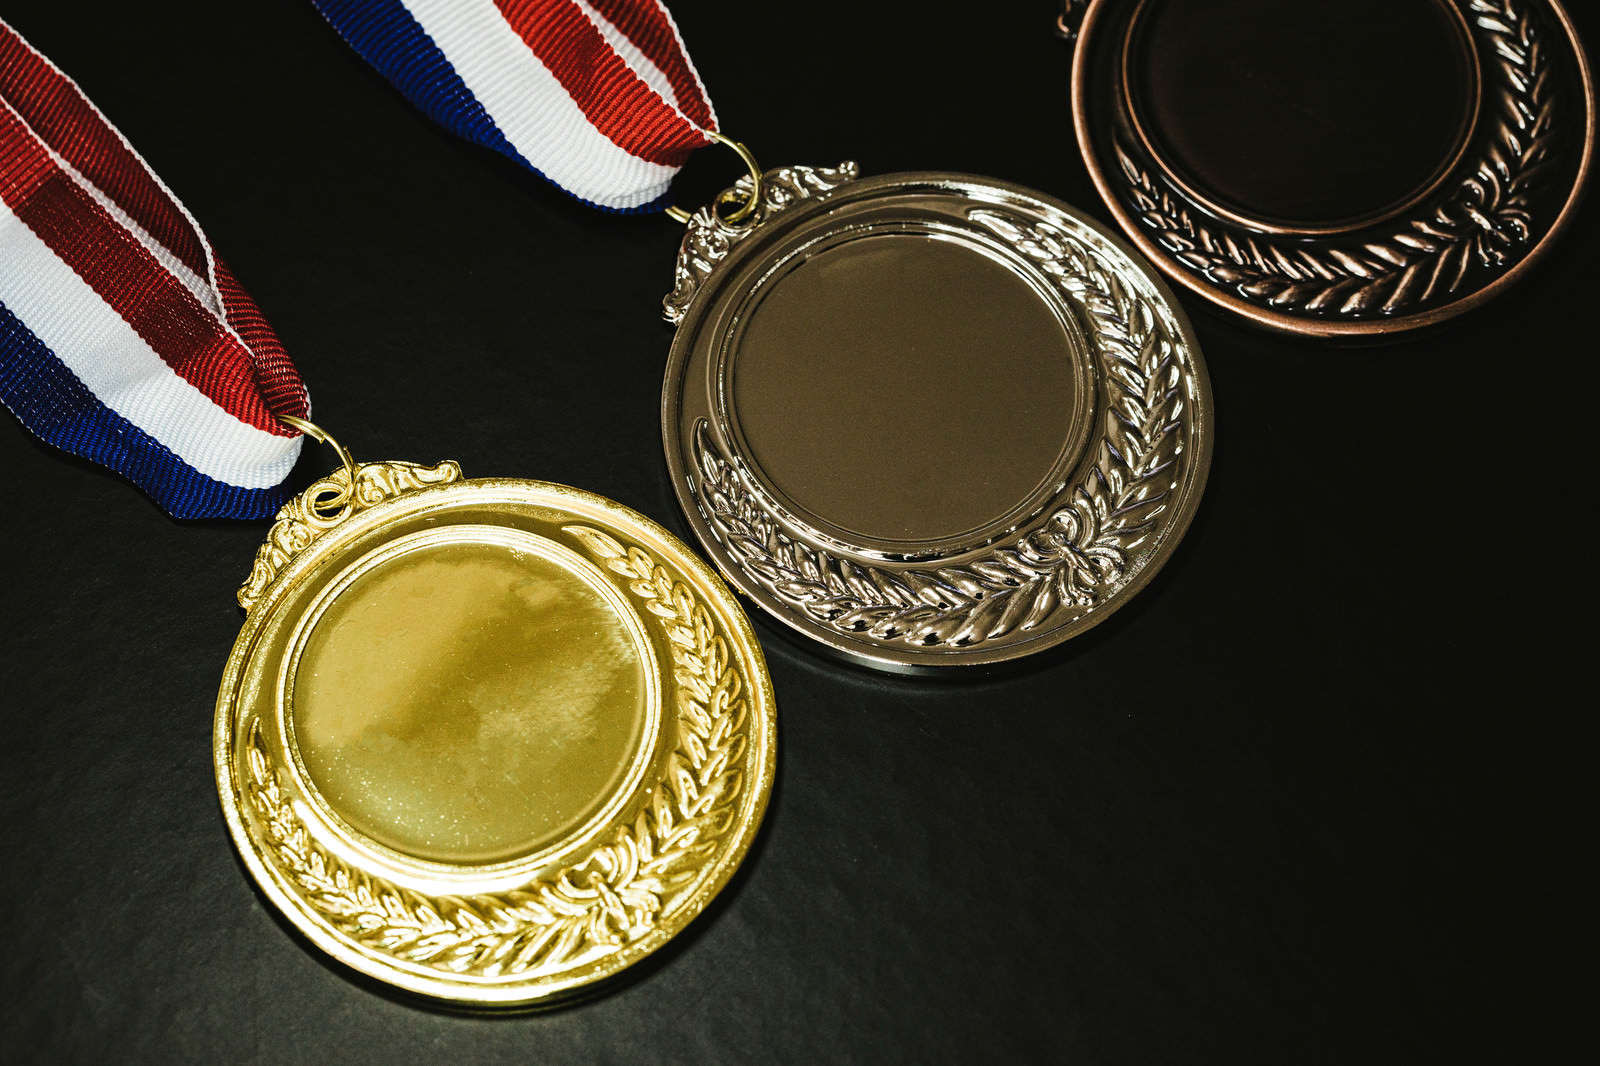 金メダルと他の色のメダルの写真を無料ダウンロード フリー素材 ぱくたそ